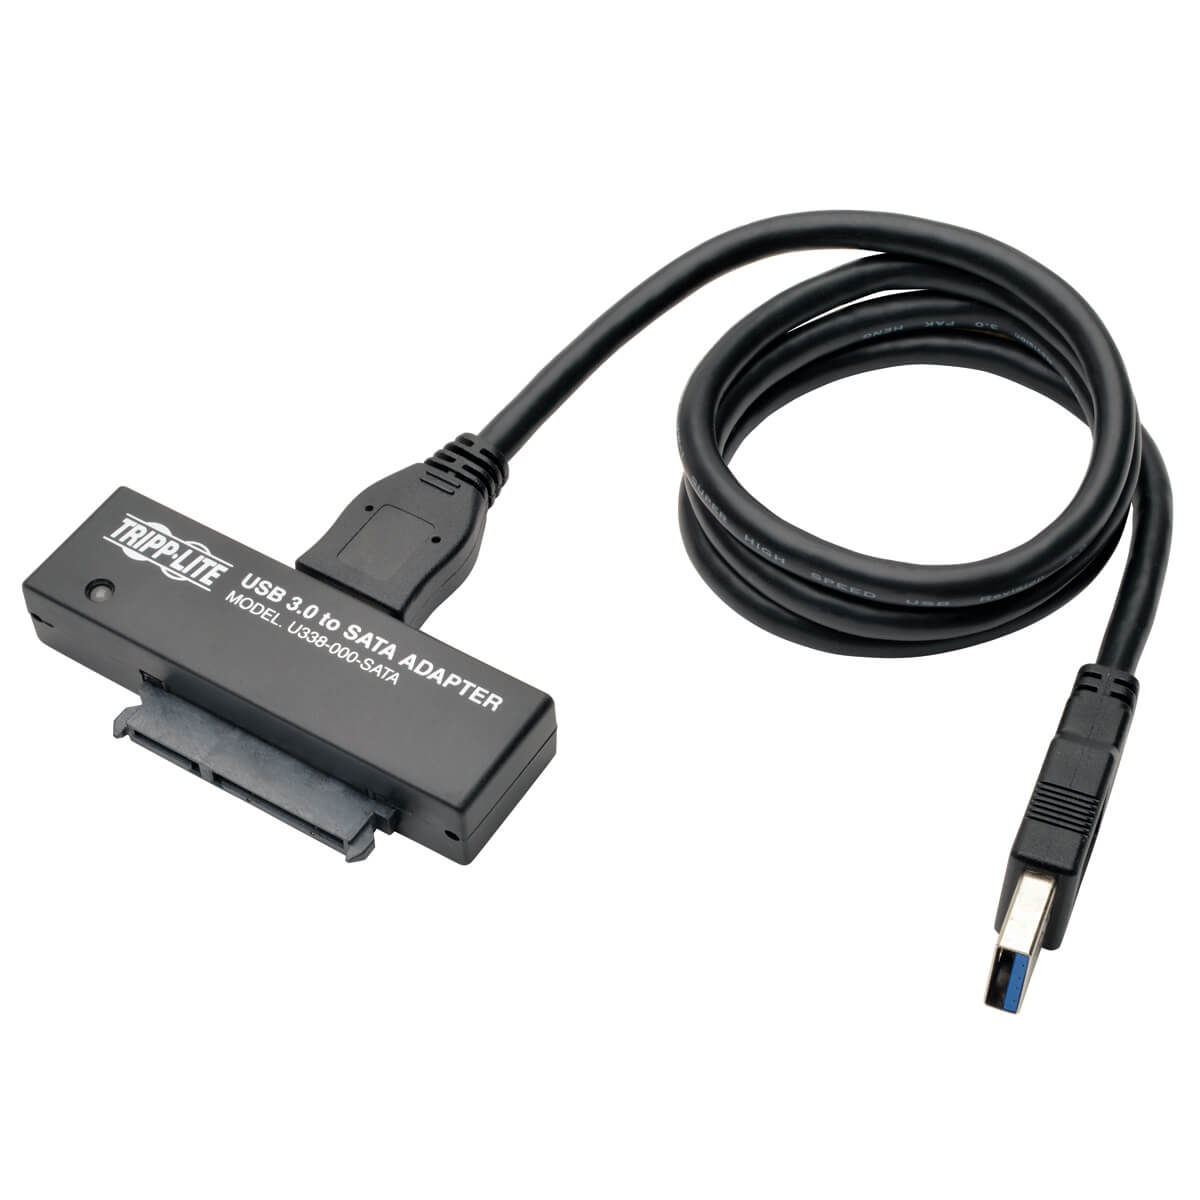 Tripp Lite U338-000-SATA Adaptador USB 3.0 SuperSpeed a SATA III para Unidades de Disco Duro SATA de 2.5" o 3.5"